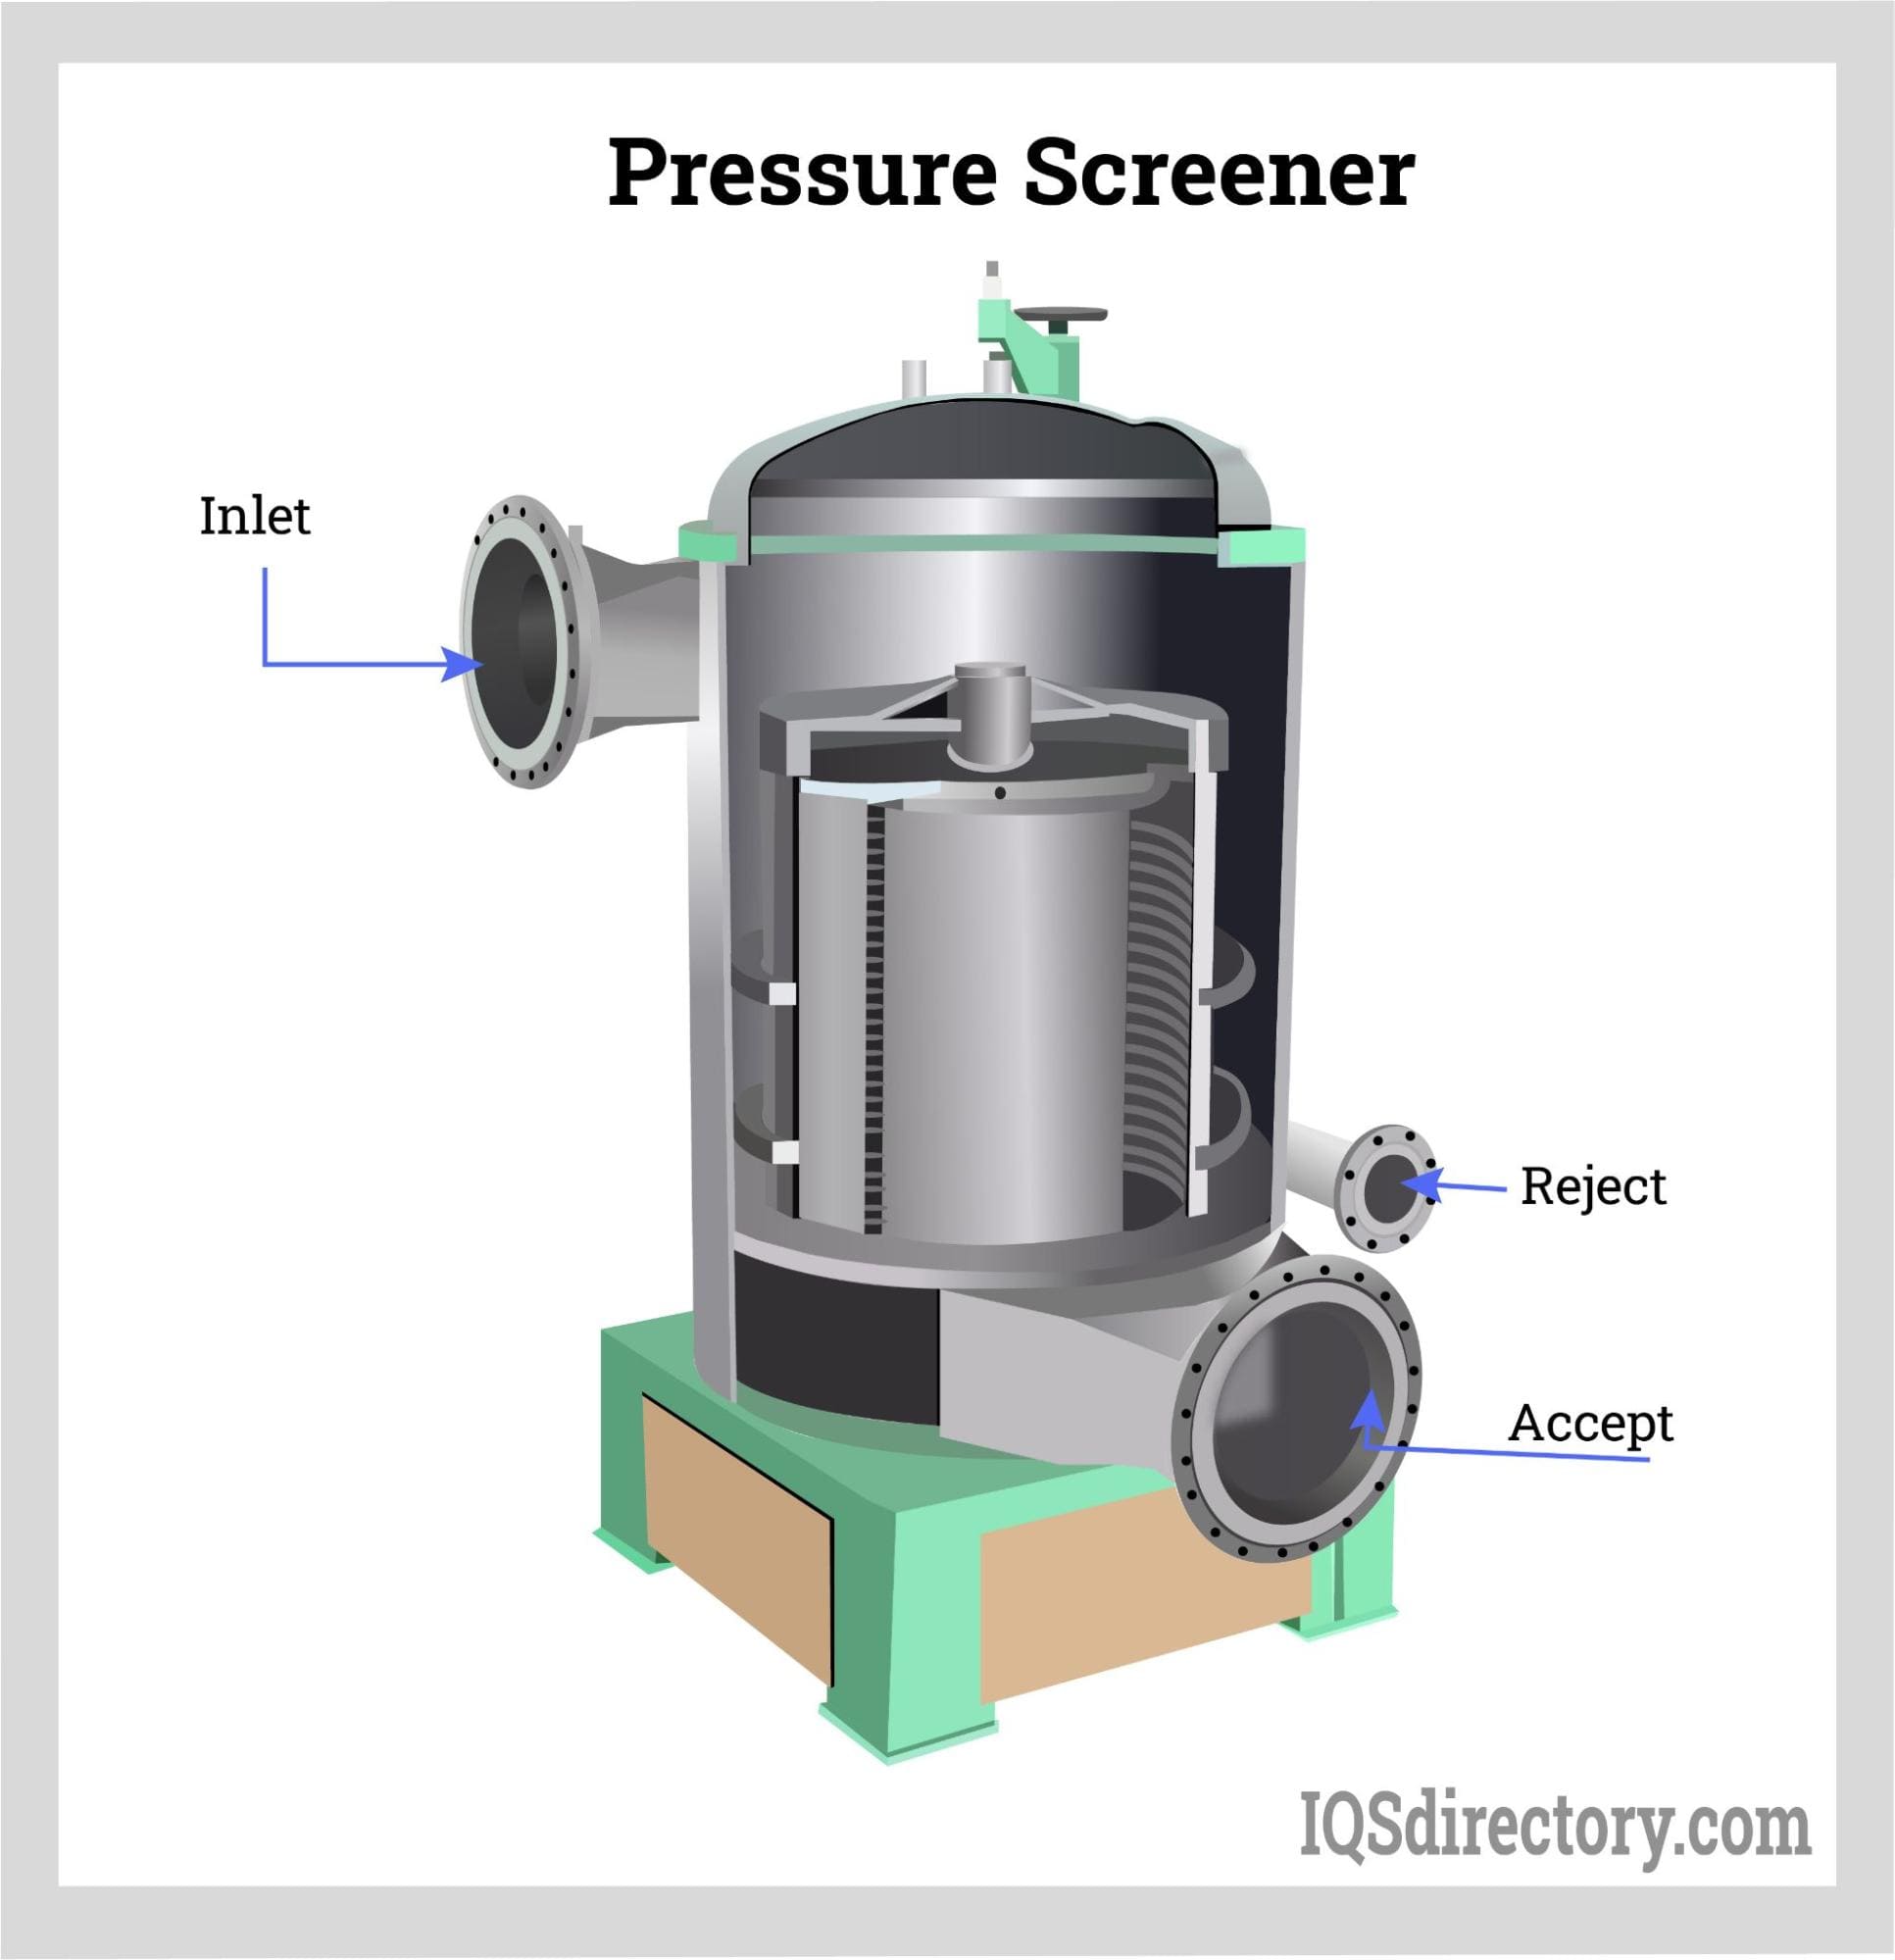 Pressure Screener